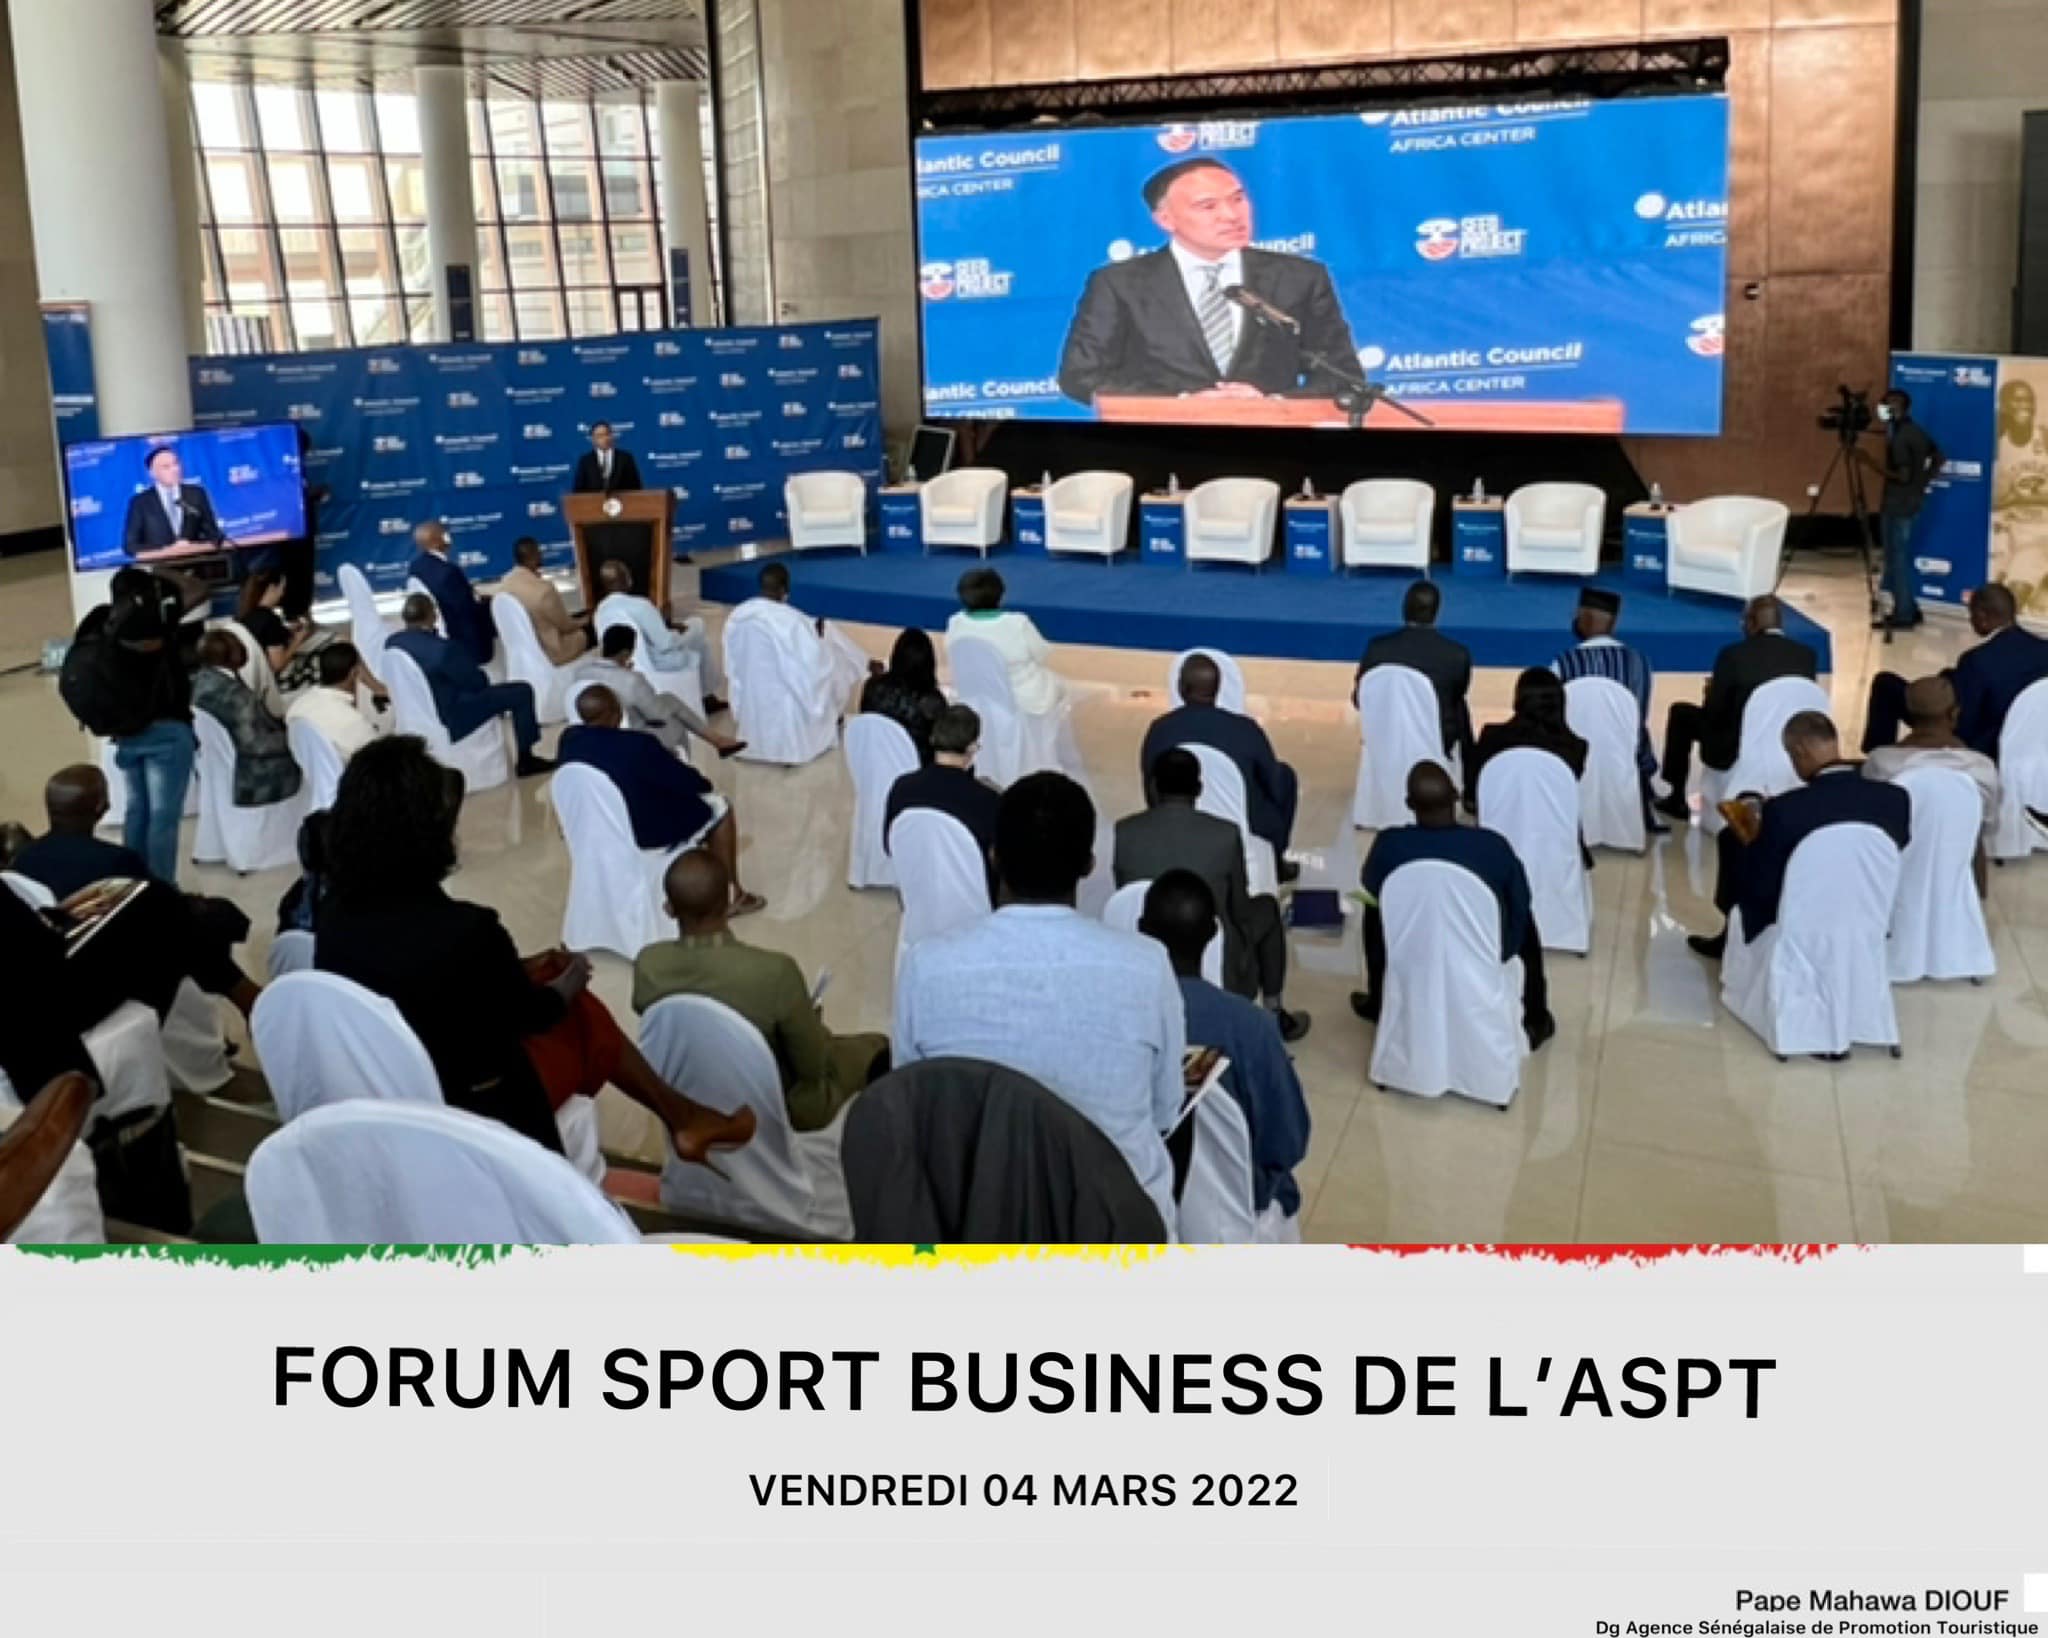 Lâ€™ASPT au Forum Sport Business de Atlantic Council dirigÃ© par notre valeureuse compatriote Rama yade. 